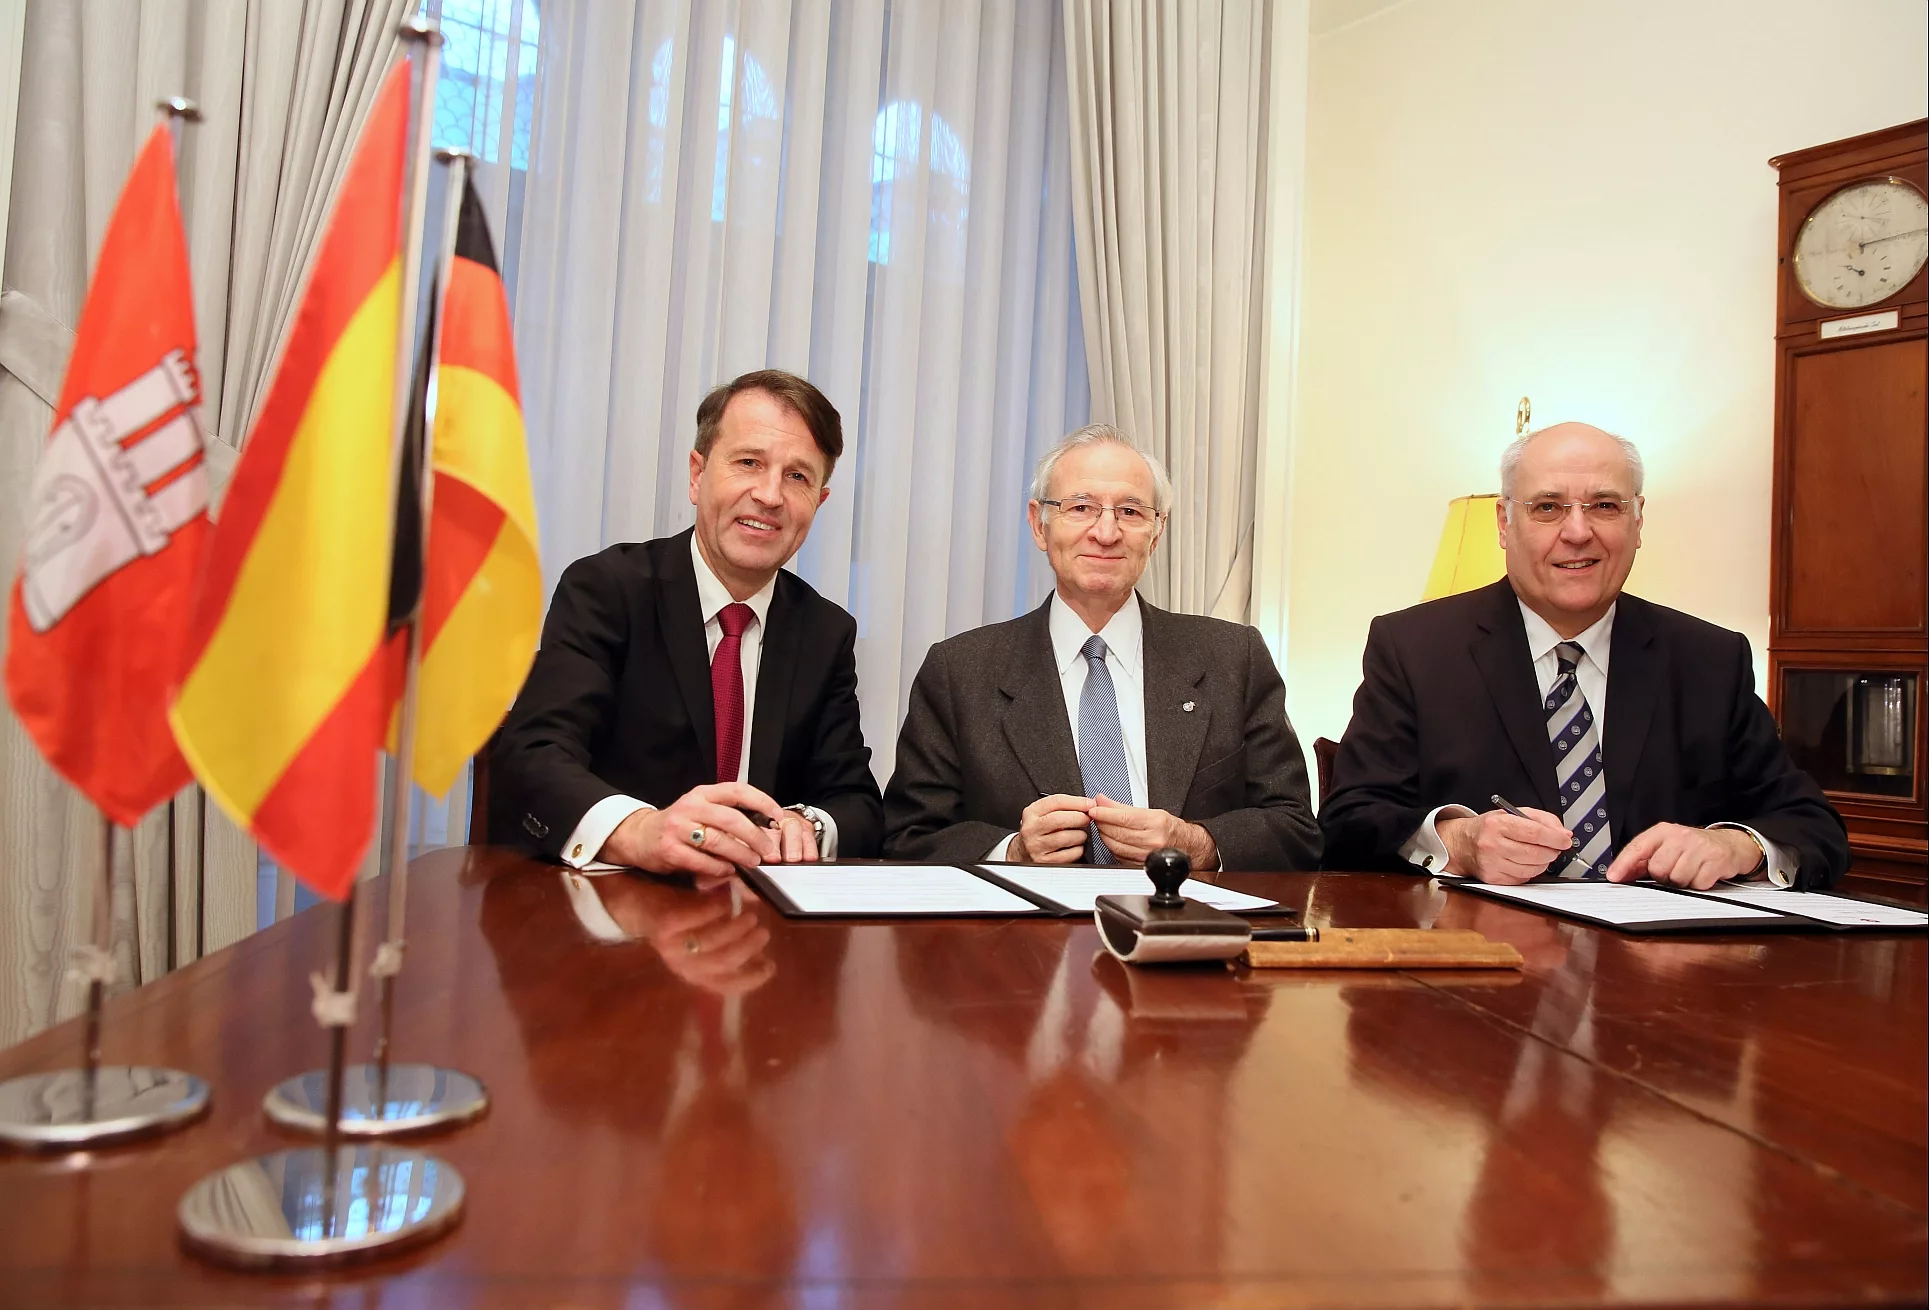 Nou acord de la Cambra amb una cambra d’Alemanya, mercat prioritari per a l’economia catalana